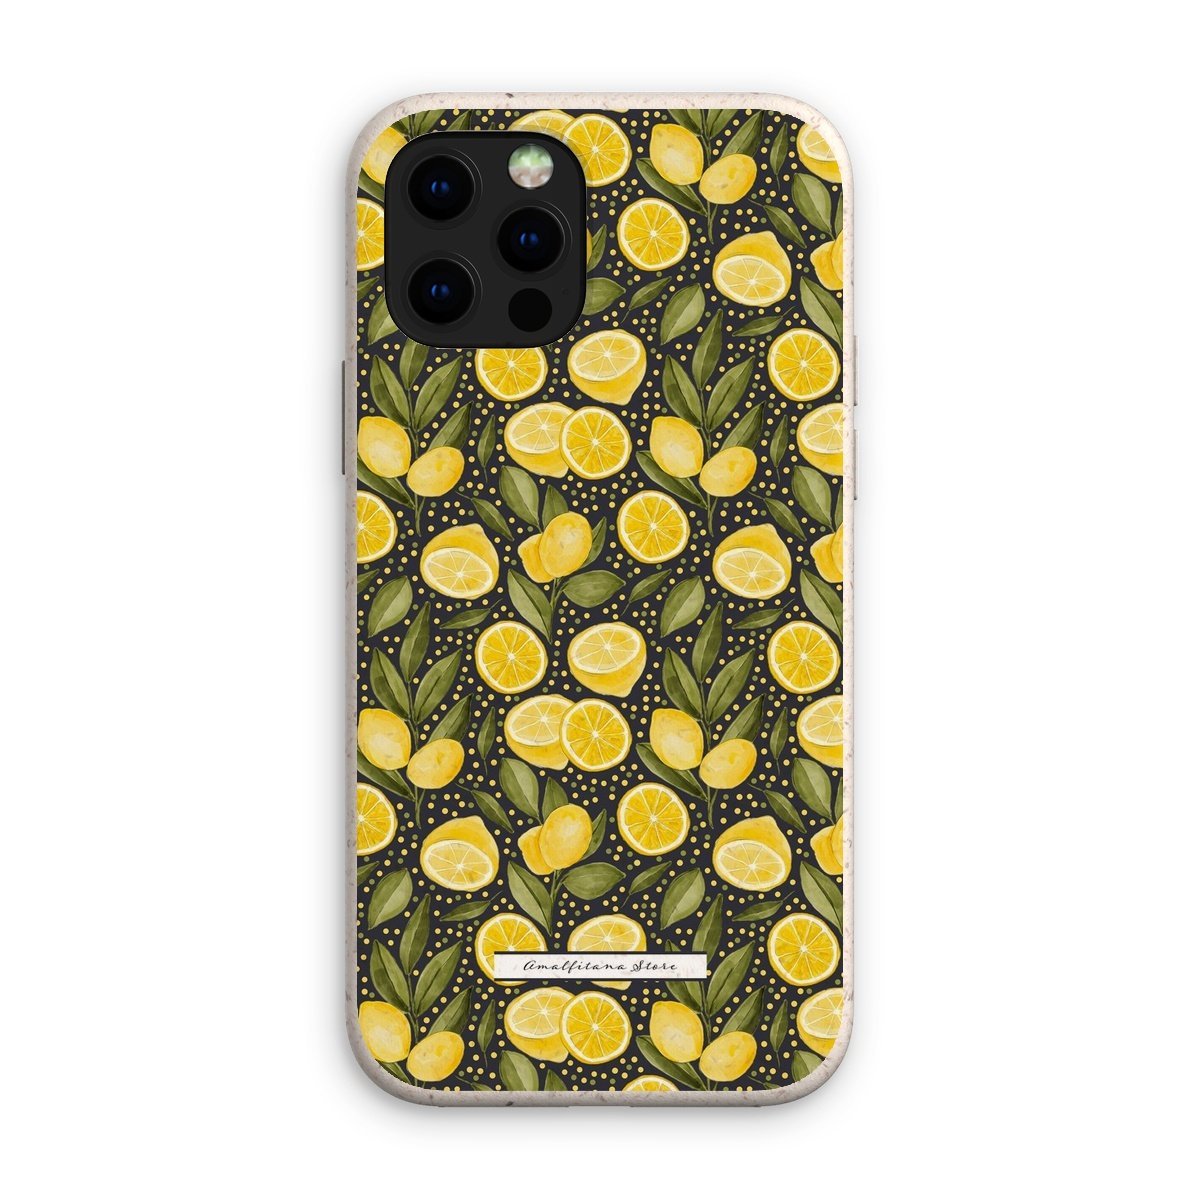 Lemons Squeeze Eco Phone Case - AMALFITANA STORE